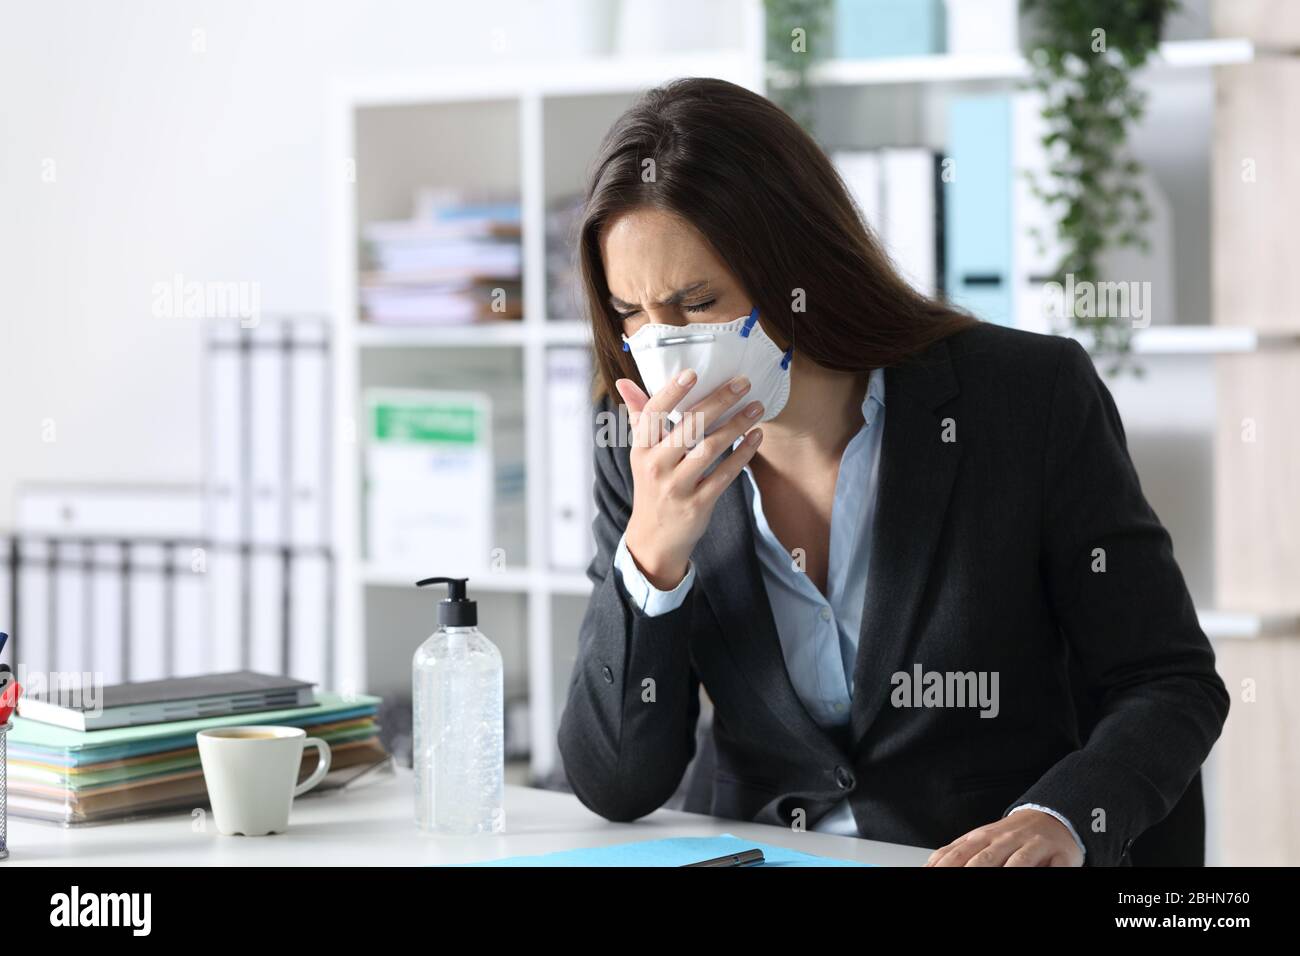 Femme de haut niveau portant un masque toussant et éternuant sur un bureau Banque D'Images